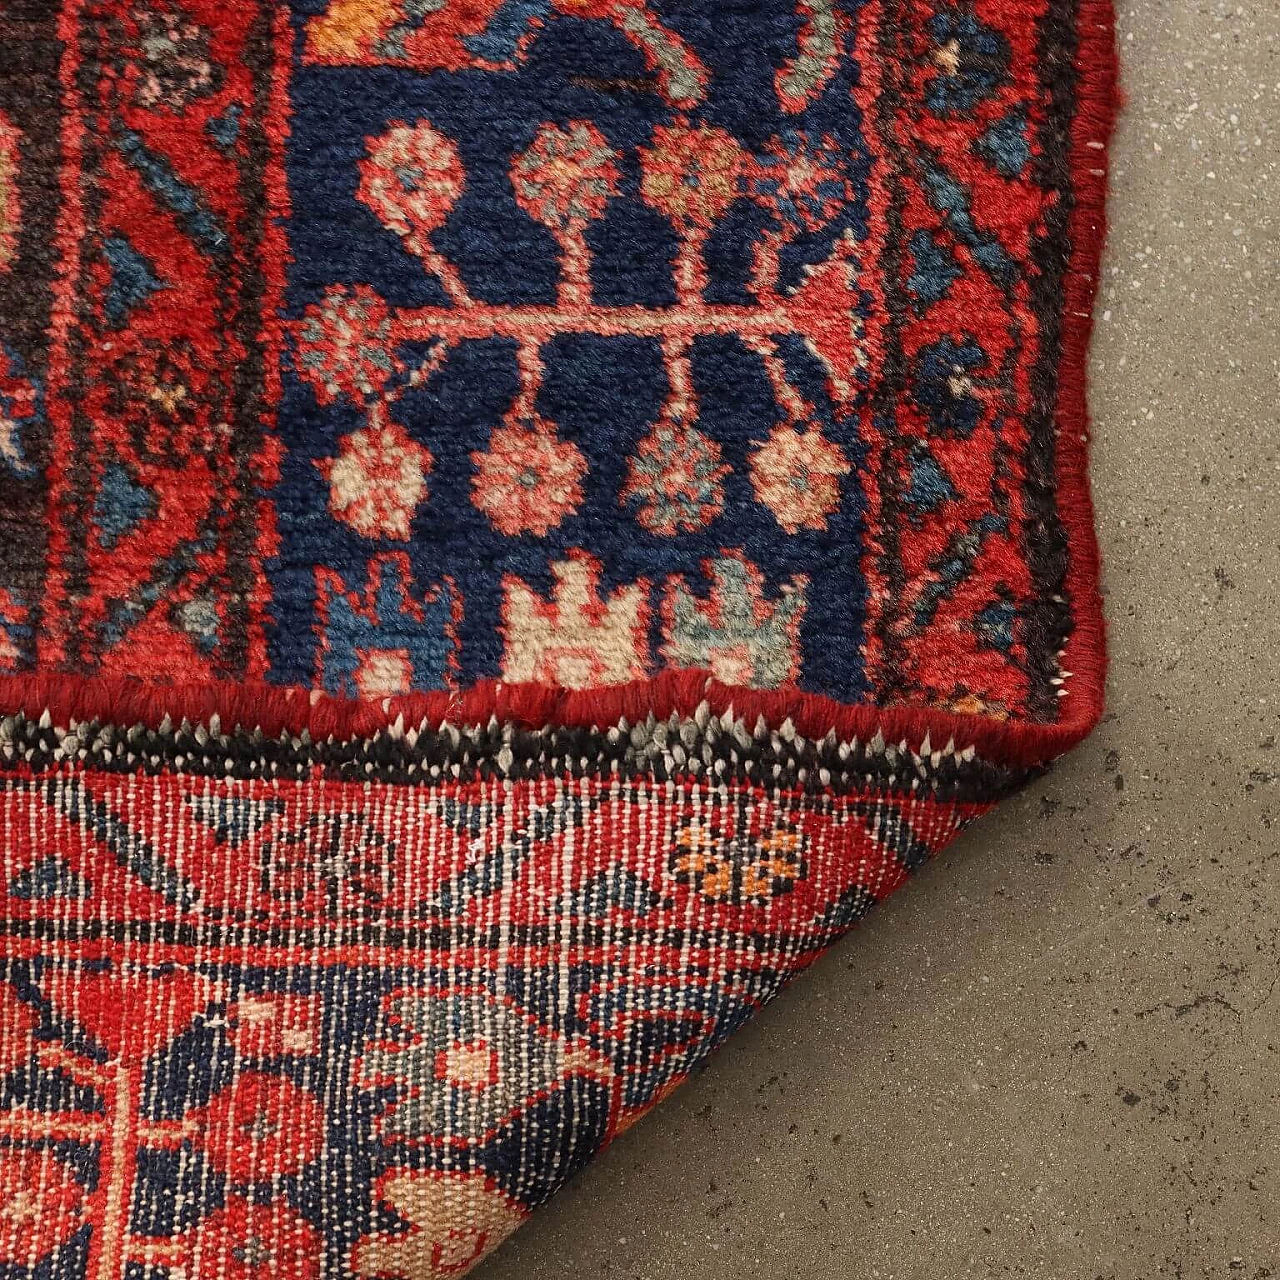 Iranian wool and cotton Malayer rug 9